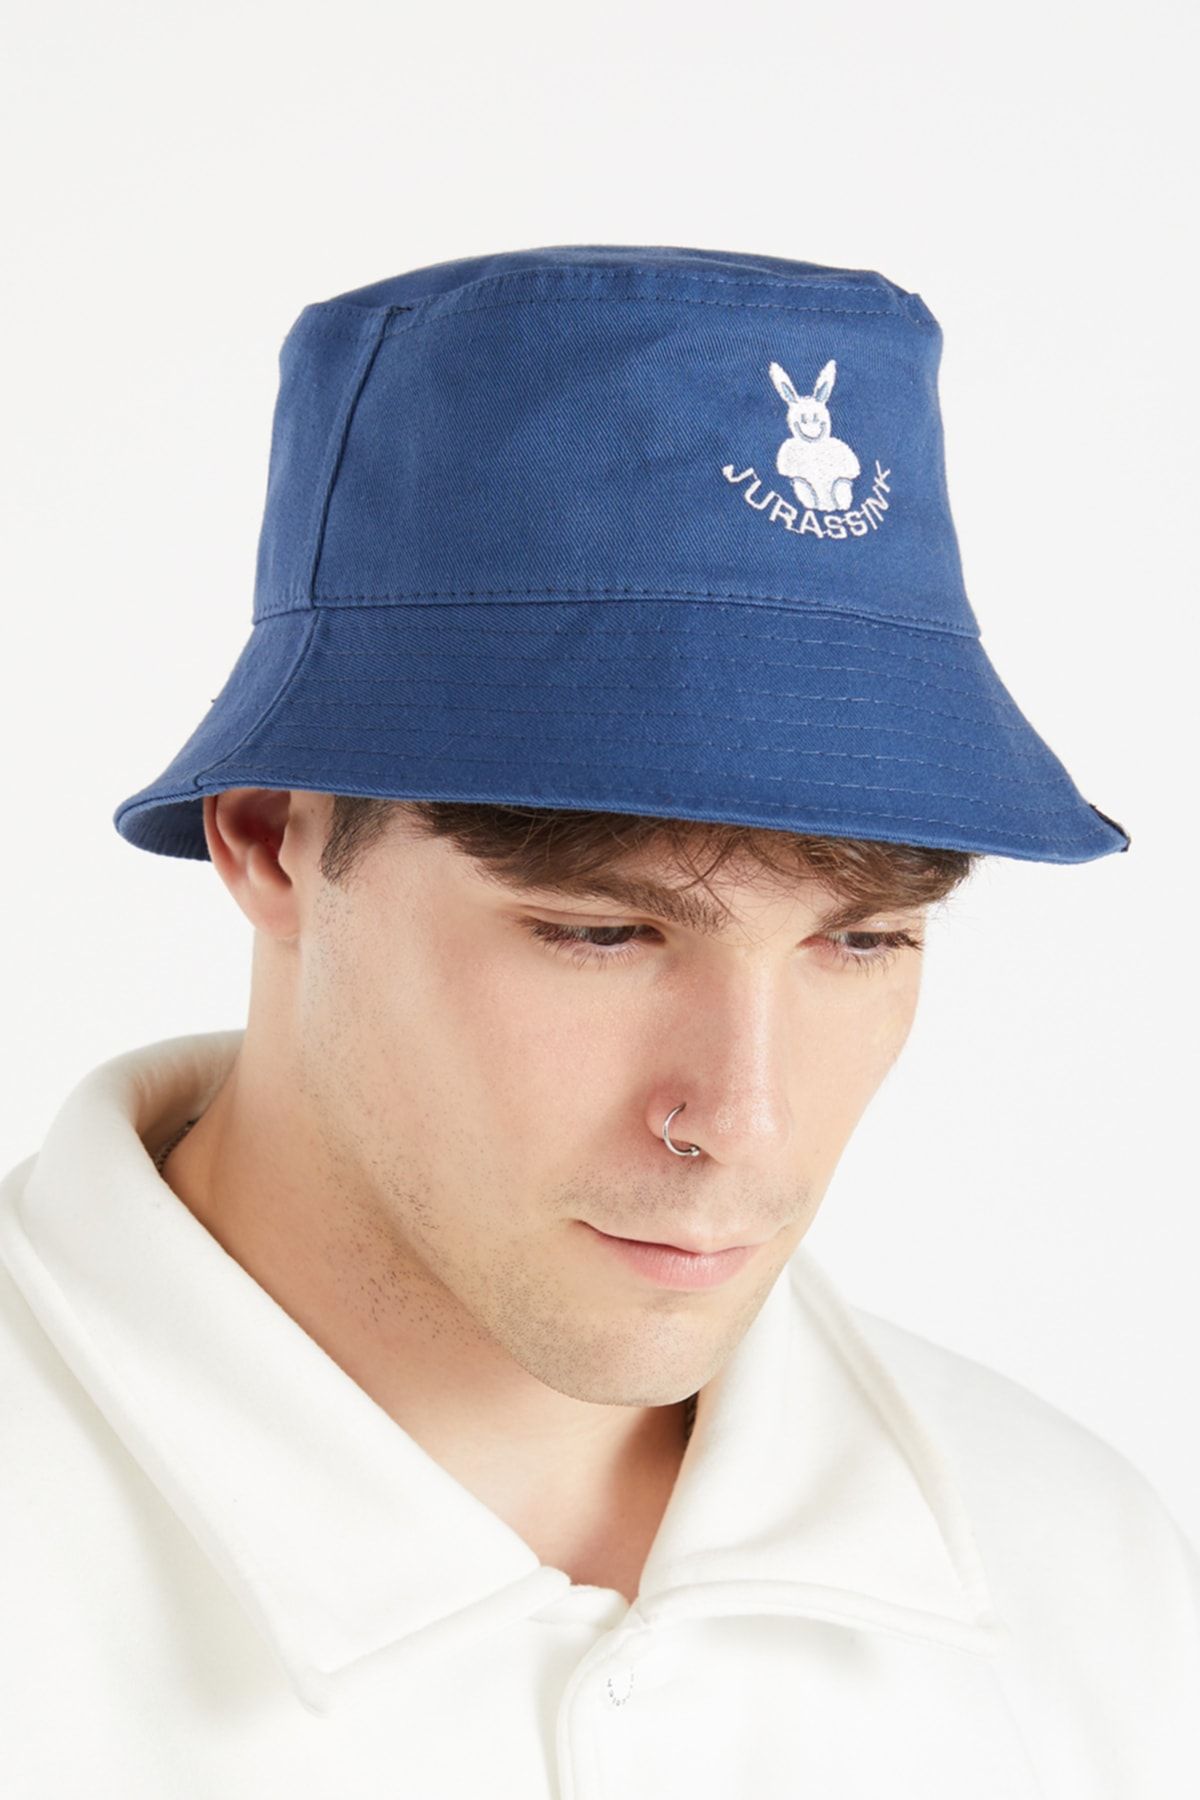 JURASSİNK Erkek Nakış Işlemeli Lacivert Bucket Şapka